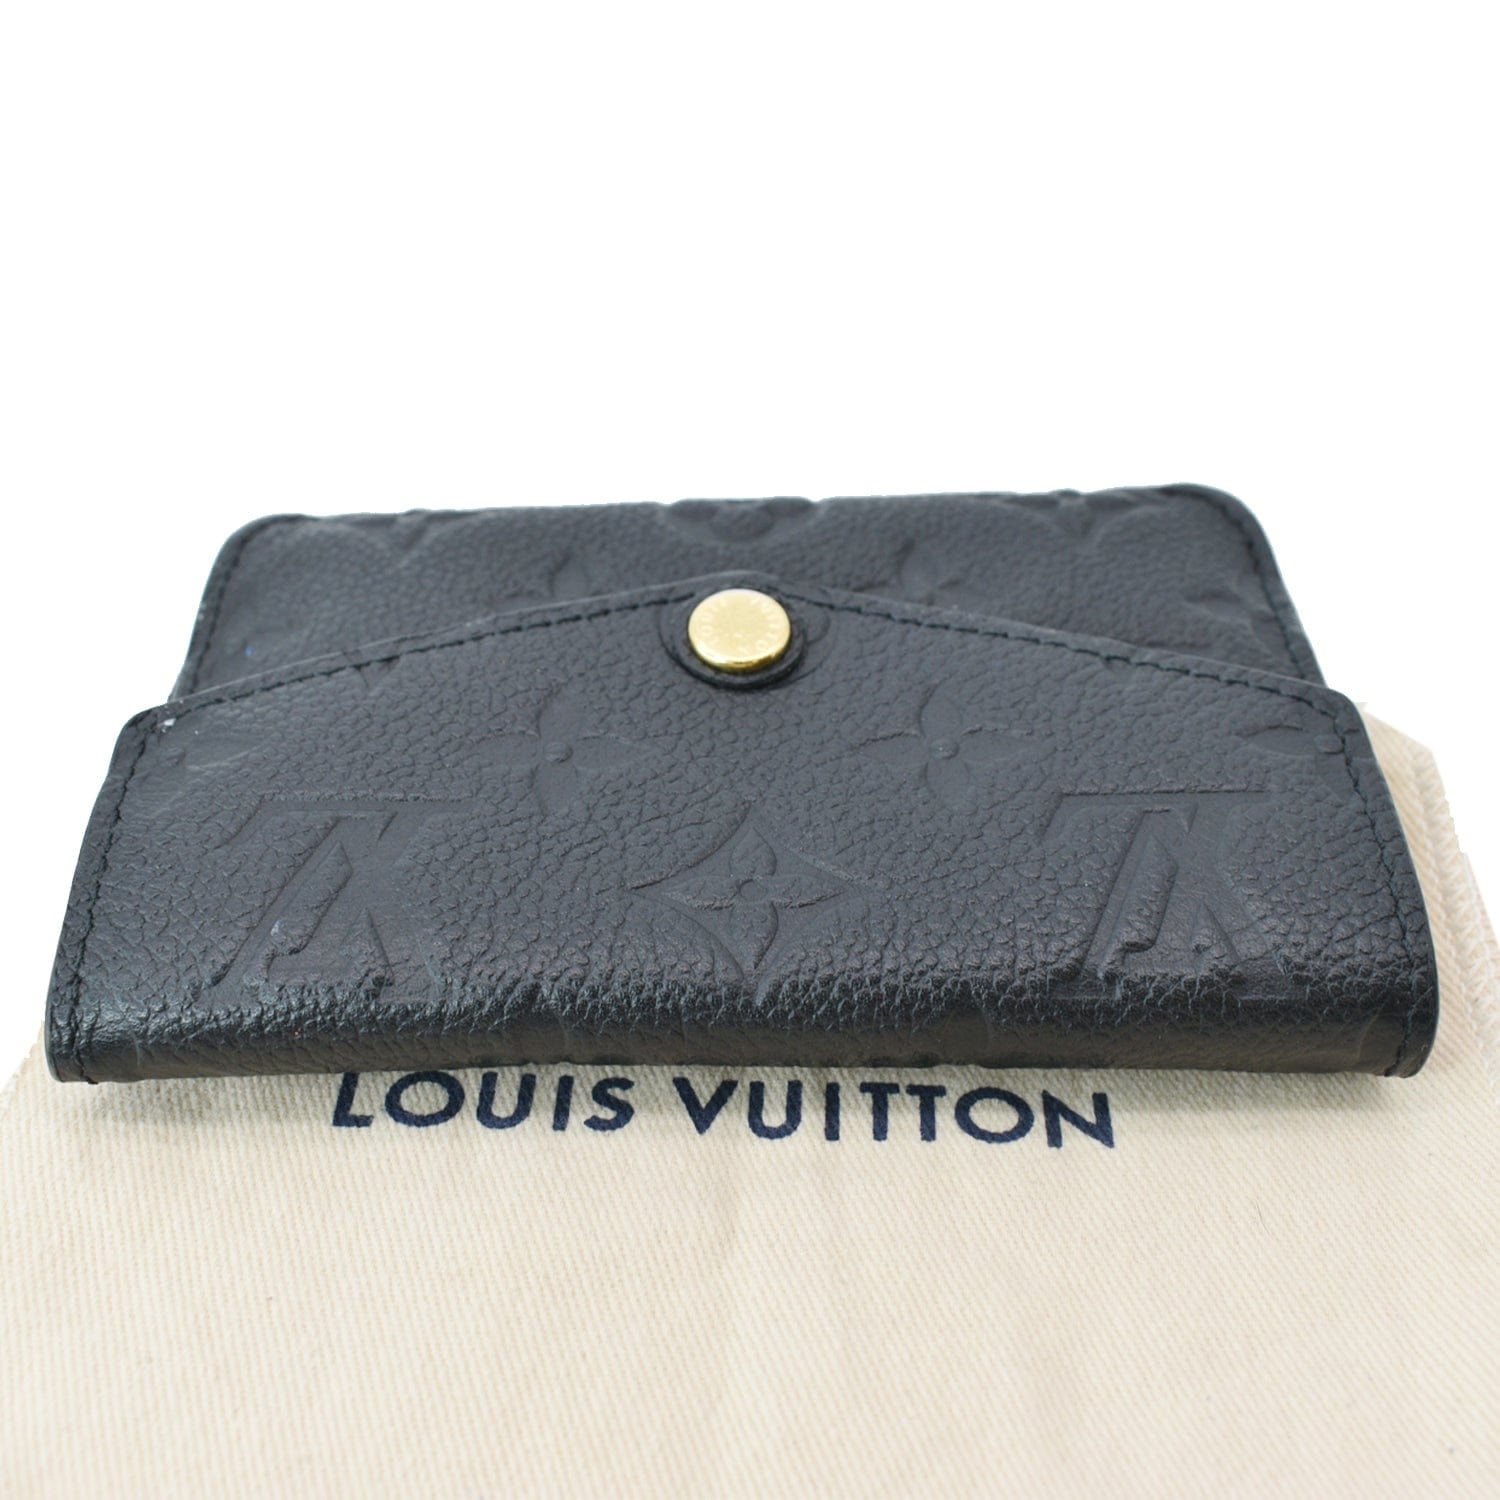 Louis Vuitton Key Pouch Empreinte Leather Wallet Noir